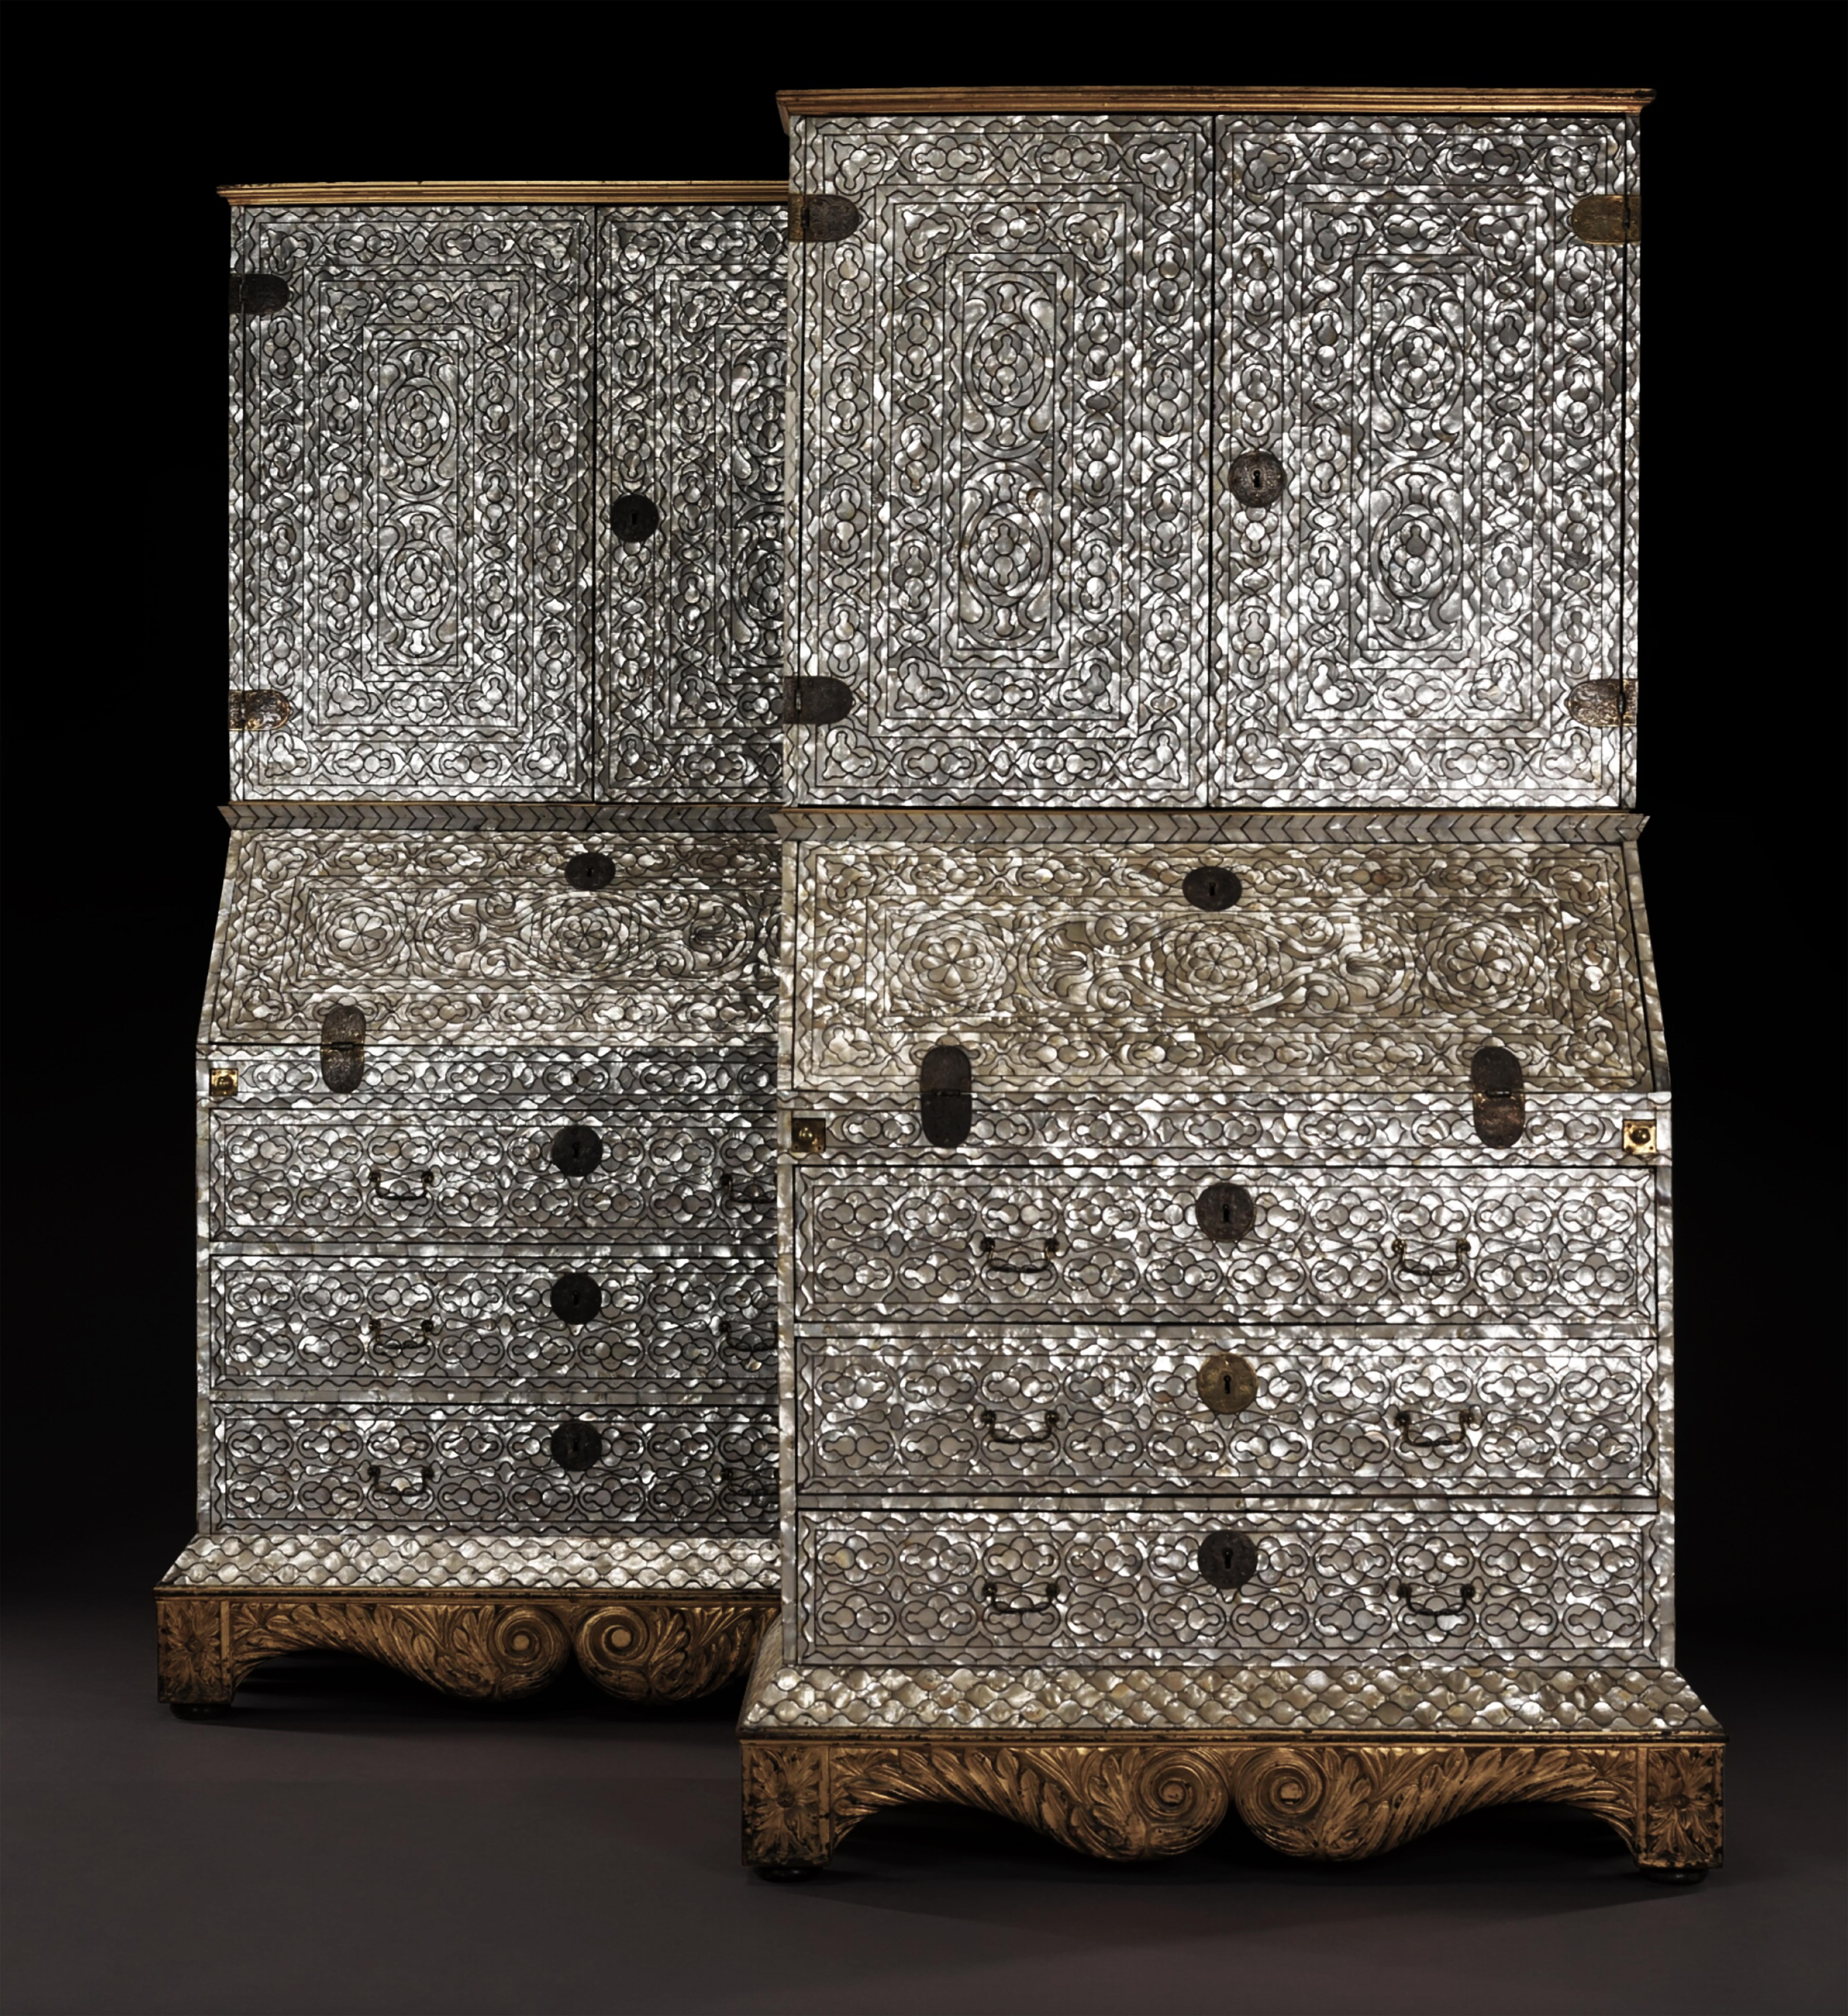 Vizekönigreich Peru, Lima, 18. Jahrhundert, ca. 1720-1760

Jeweils mit einem profilierten Gesims aus Goldholz und auf einem blattgeschnitzten Sockel aus Goldholz, möglicherweise später und aus England. Die Schränke mit Silberbeschlägen sind aus